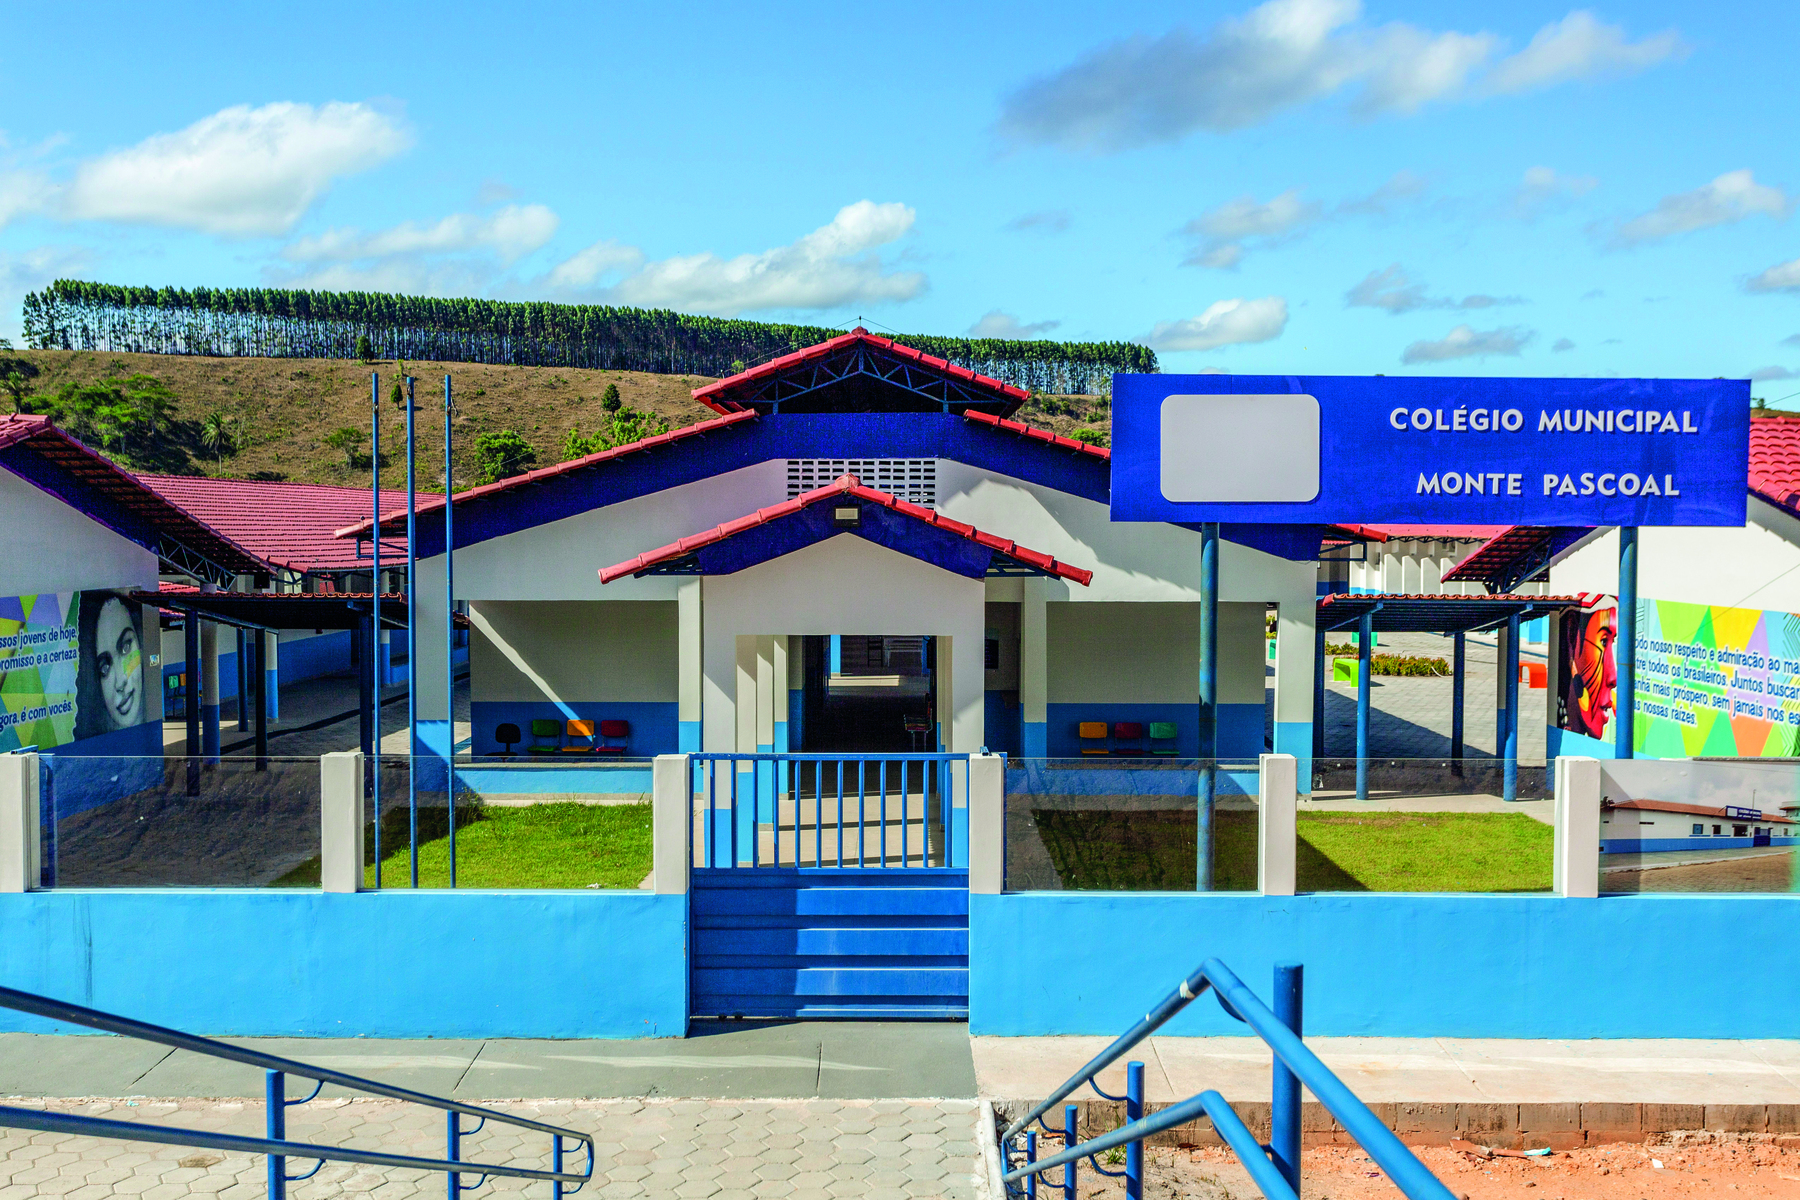 Fotografia. Fachada de uma escola, com paredes brancas e azuis, um portão central de entrada e área gramada.